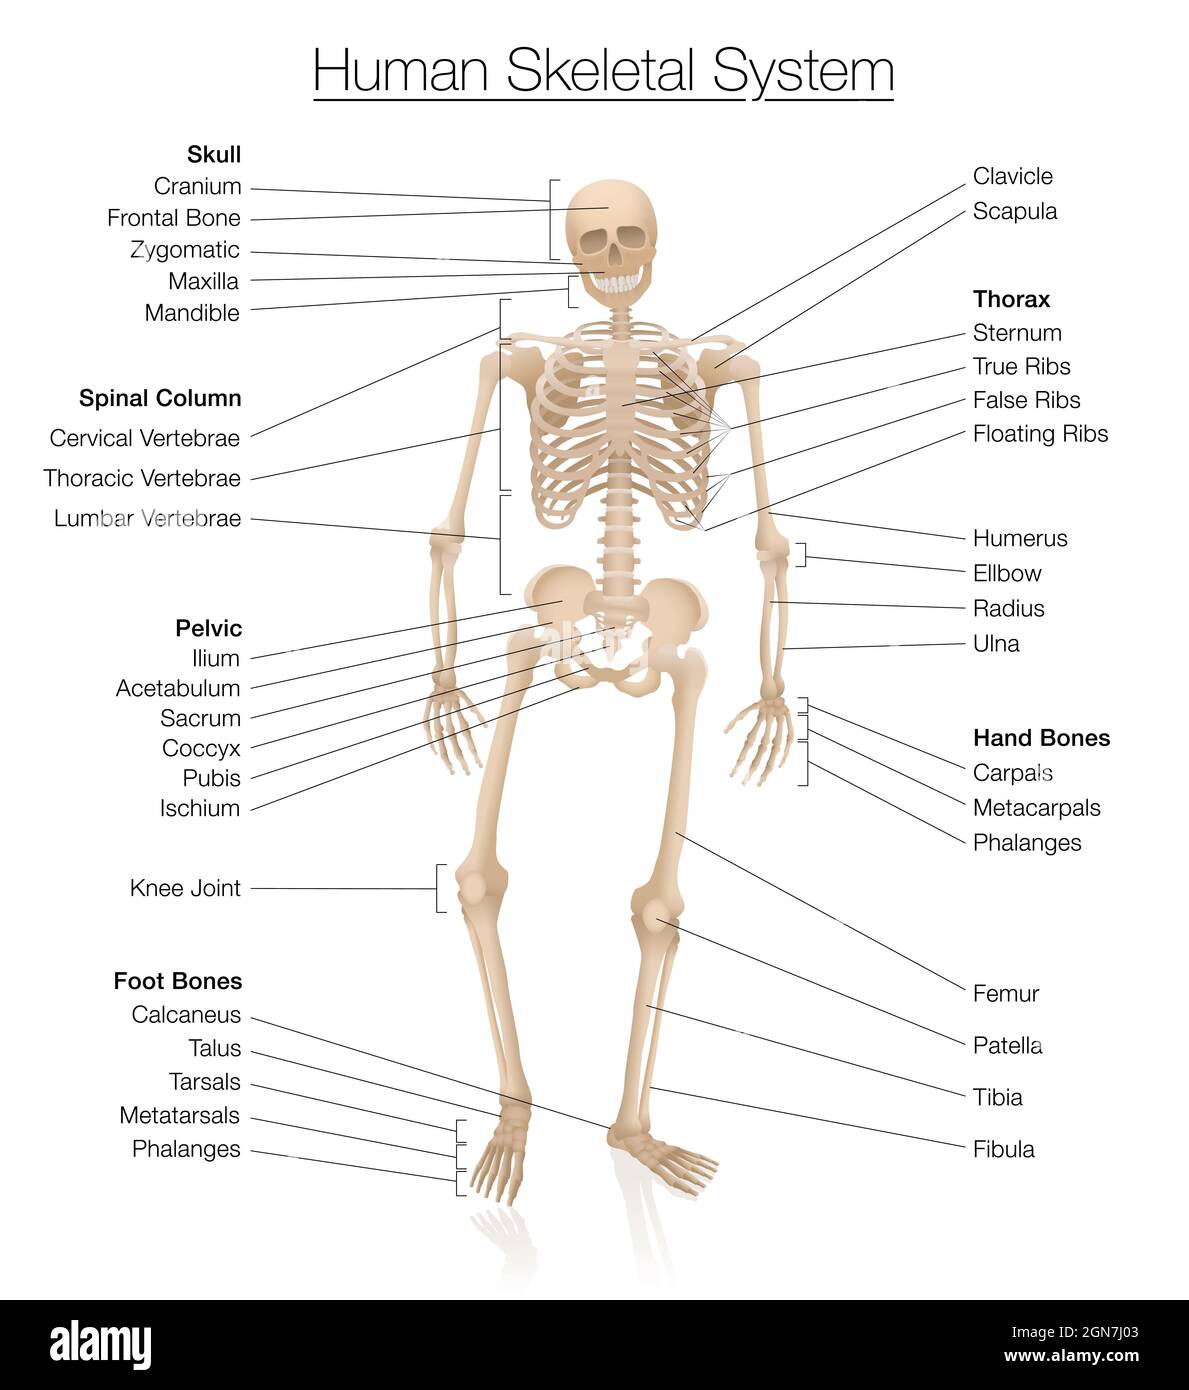 Diagramm des Skelettsystems. Menschliches Skelett, das mit den wichtigsten Knochen wie Schädel, Wirbelsäule, Becken, Thorax, Rippen, Brustbein, Hand- und Fußknochen. Stockfoto